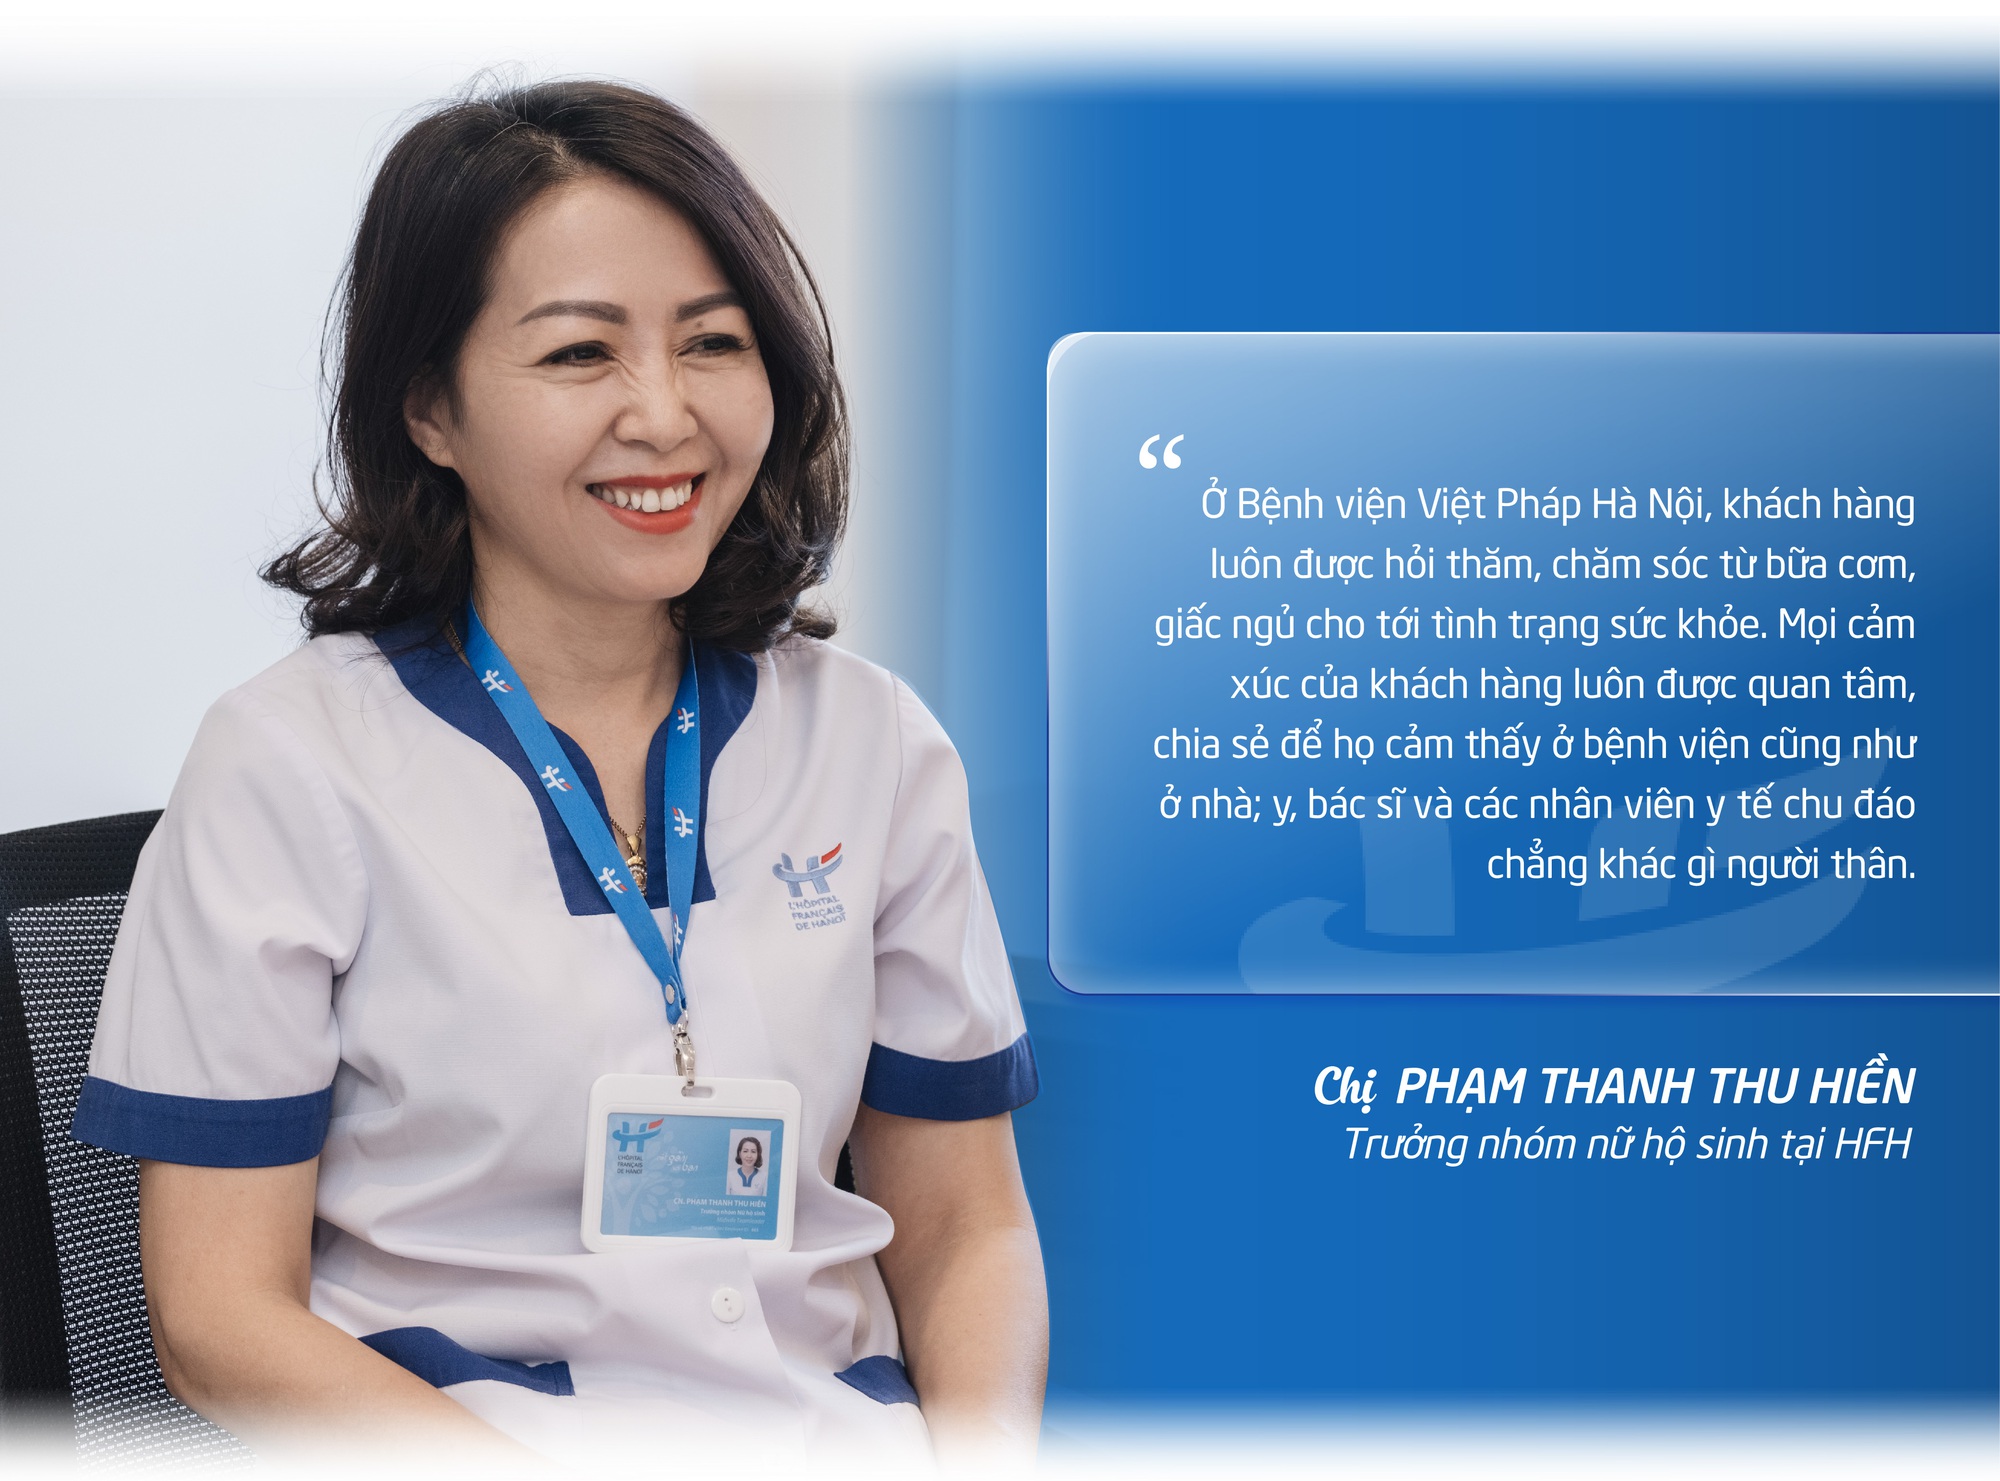 Giải mã sức hấp dẫn của dịch vụ thai sản Bệnh viện Việt Pháp Hà Nội: Sản phụ là người thân - Ảnh 3.